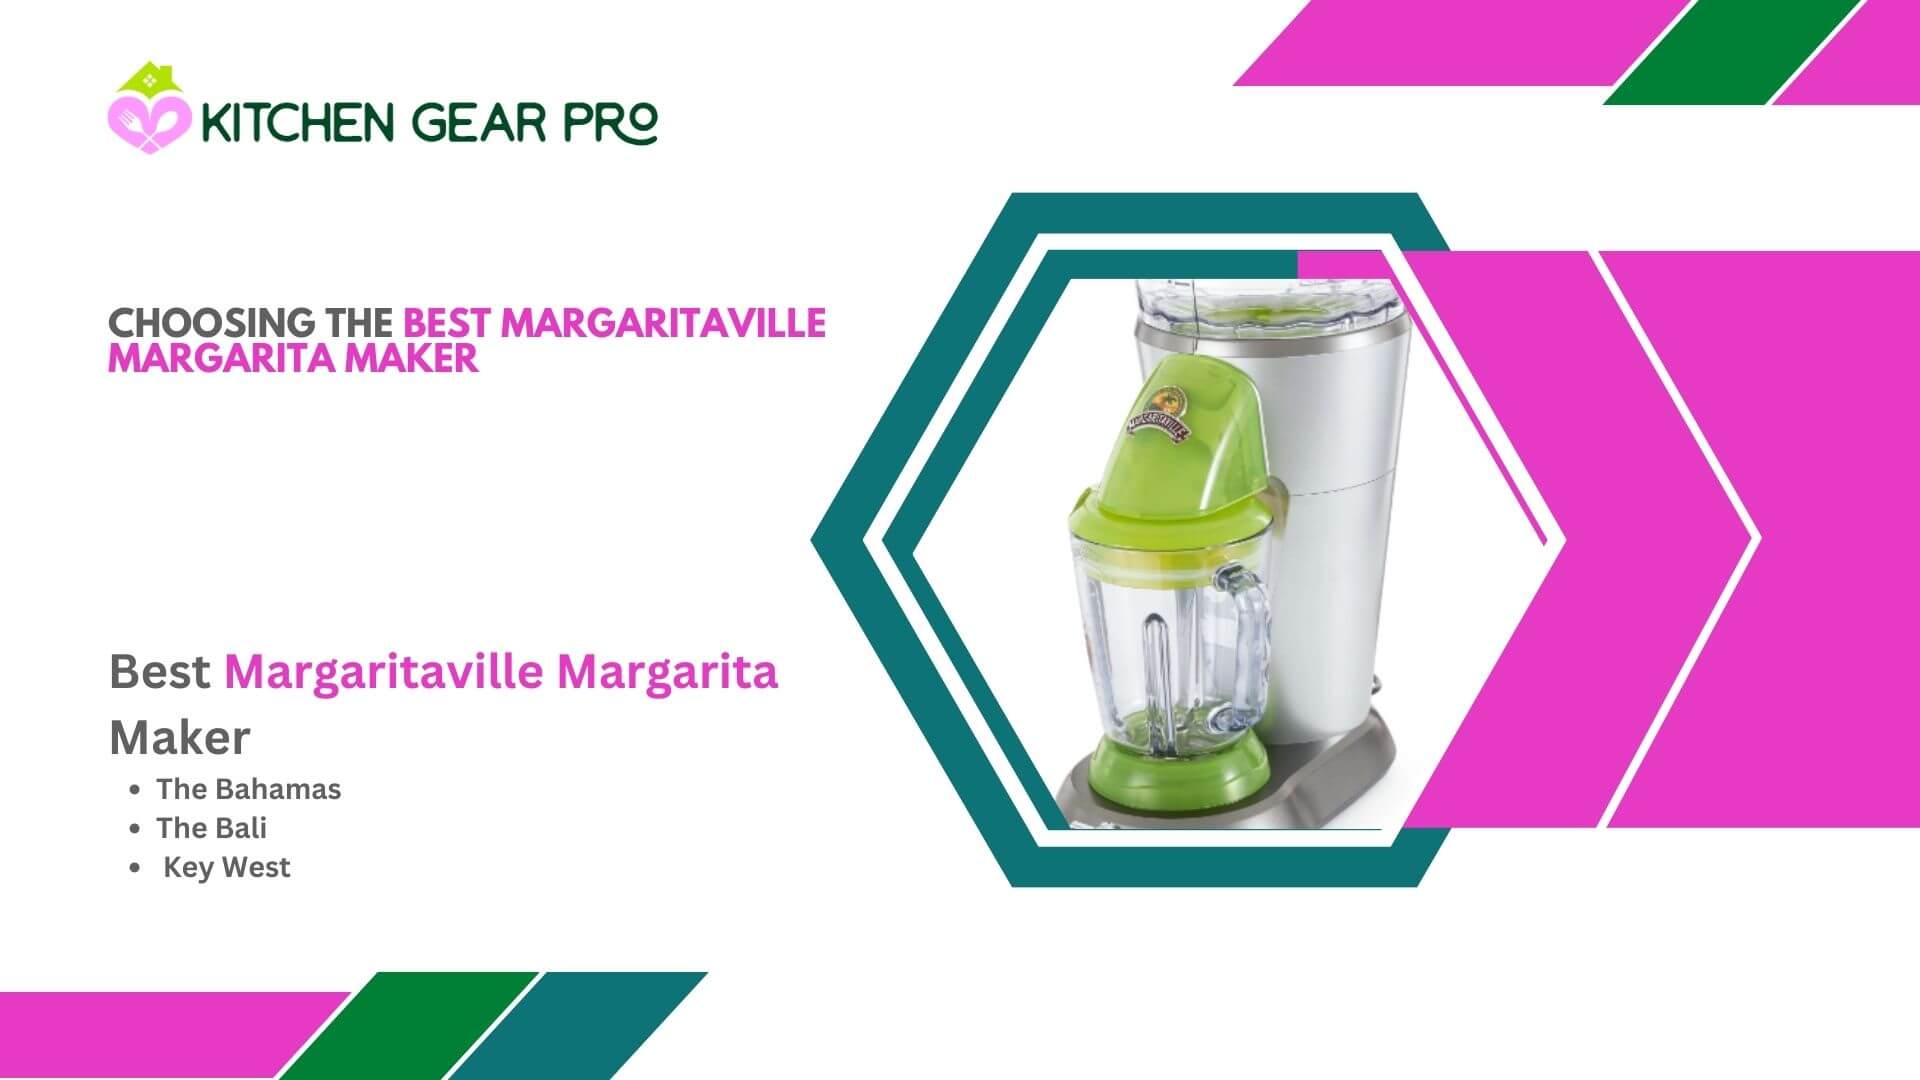 Choosing The Best Margaritaville Margarita Maker